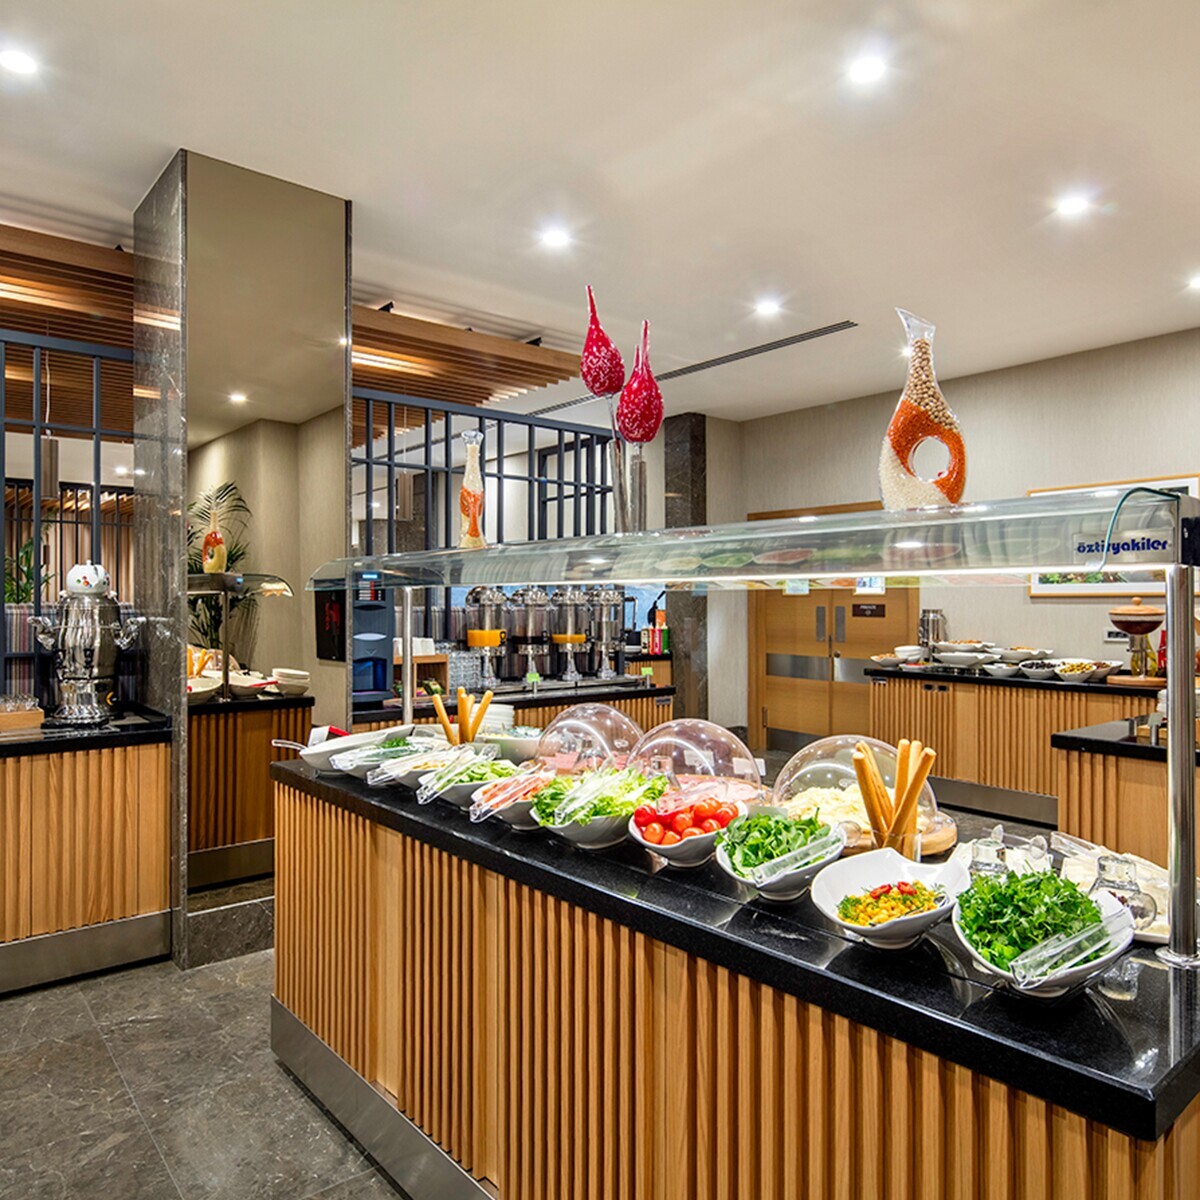 Hilton Garden Inn Safranbolu‘da Keyifli Açık Büfe Kahvaltı